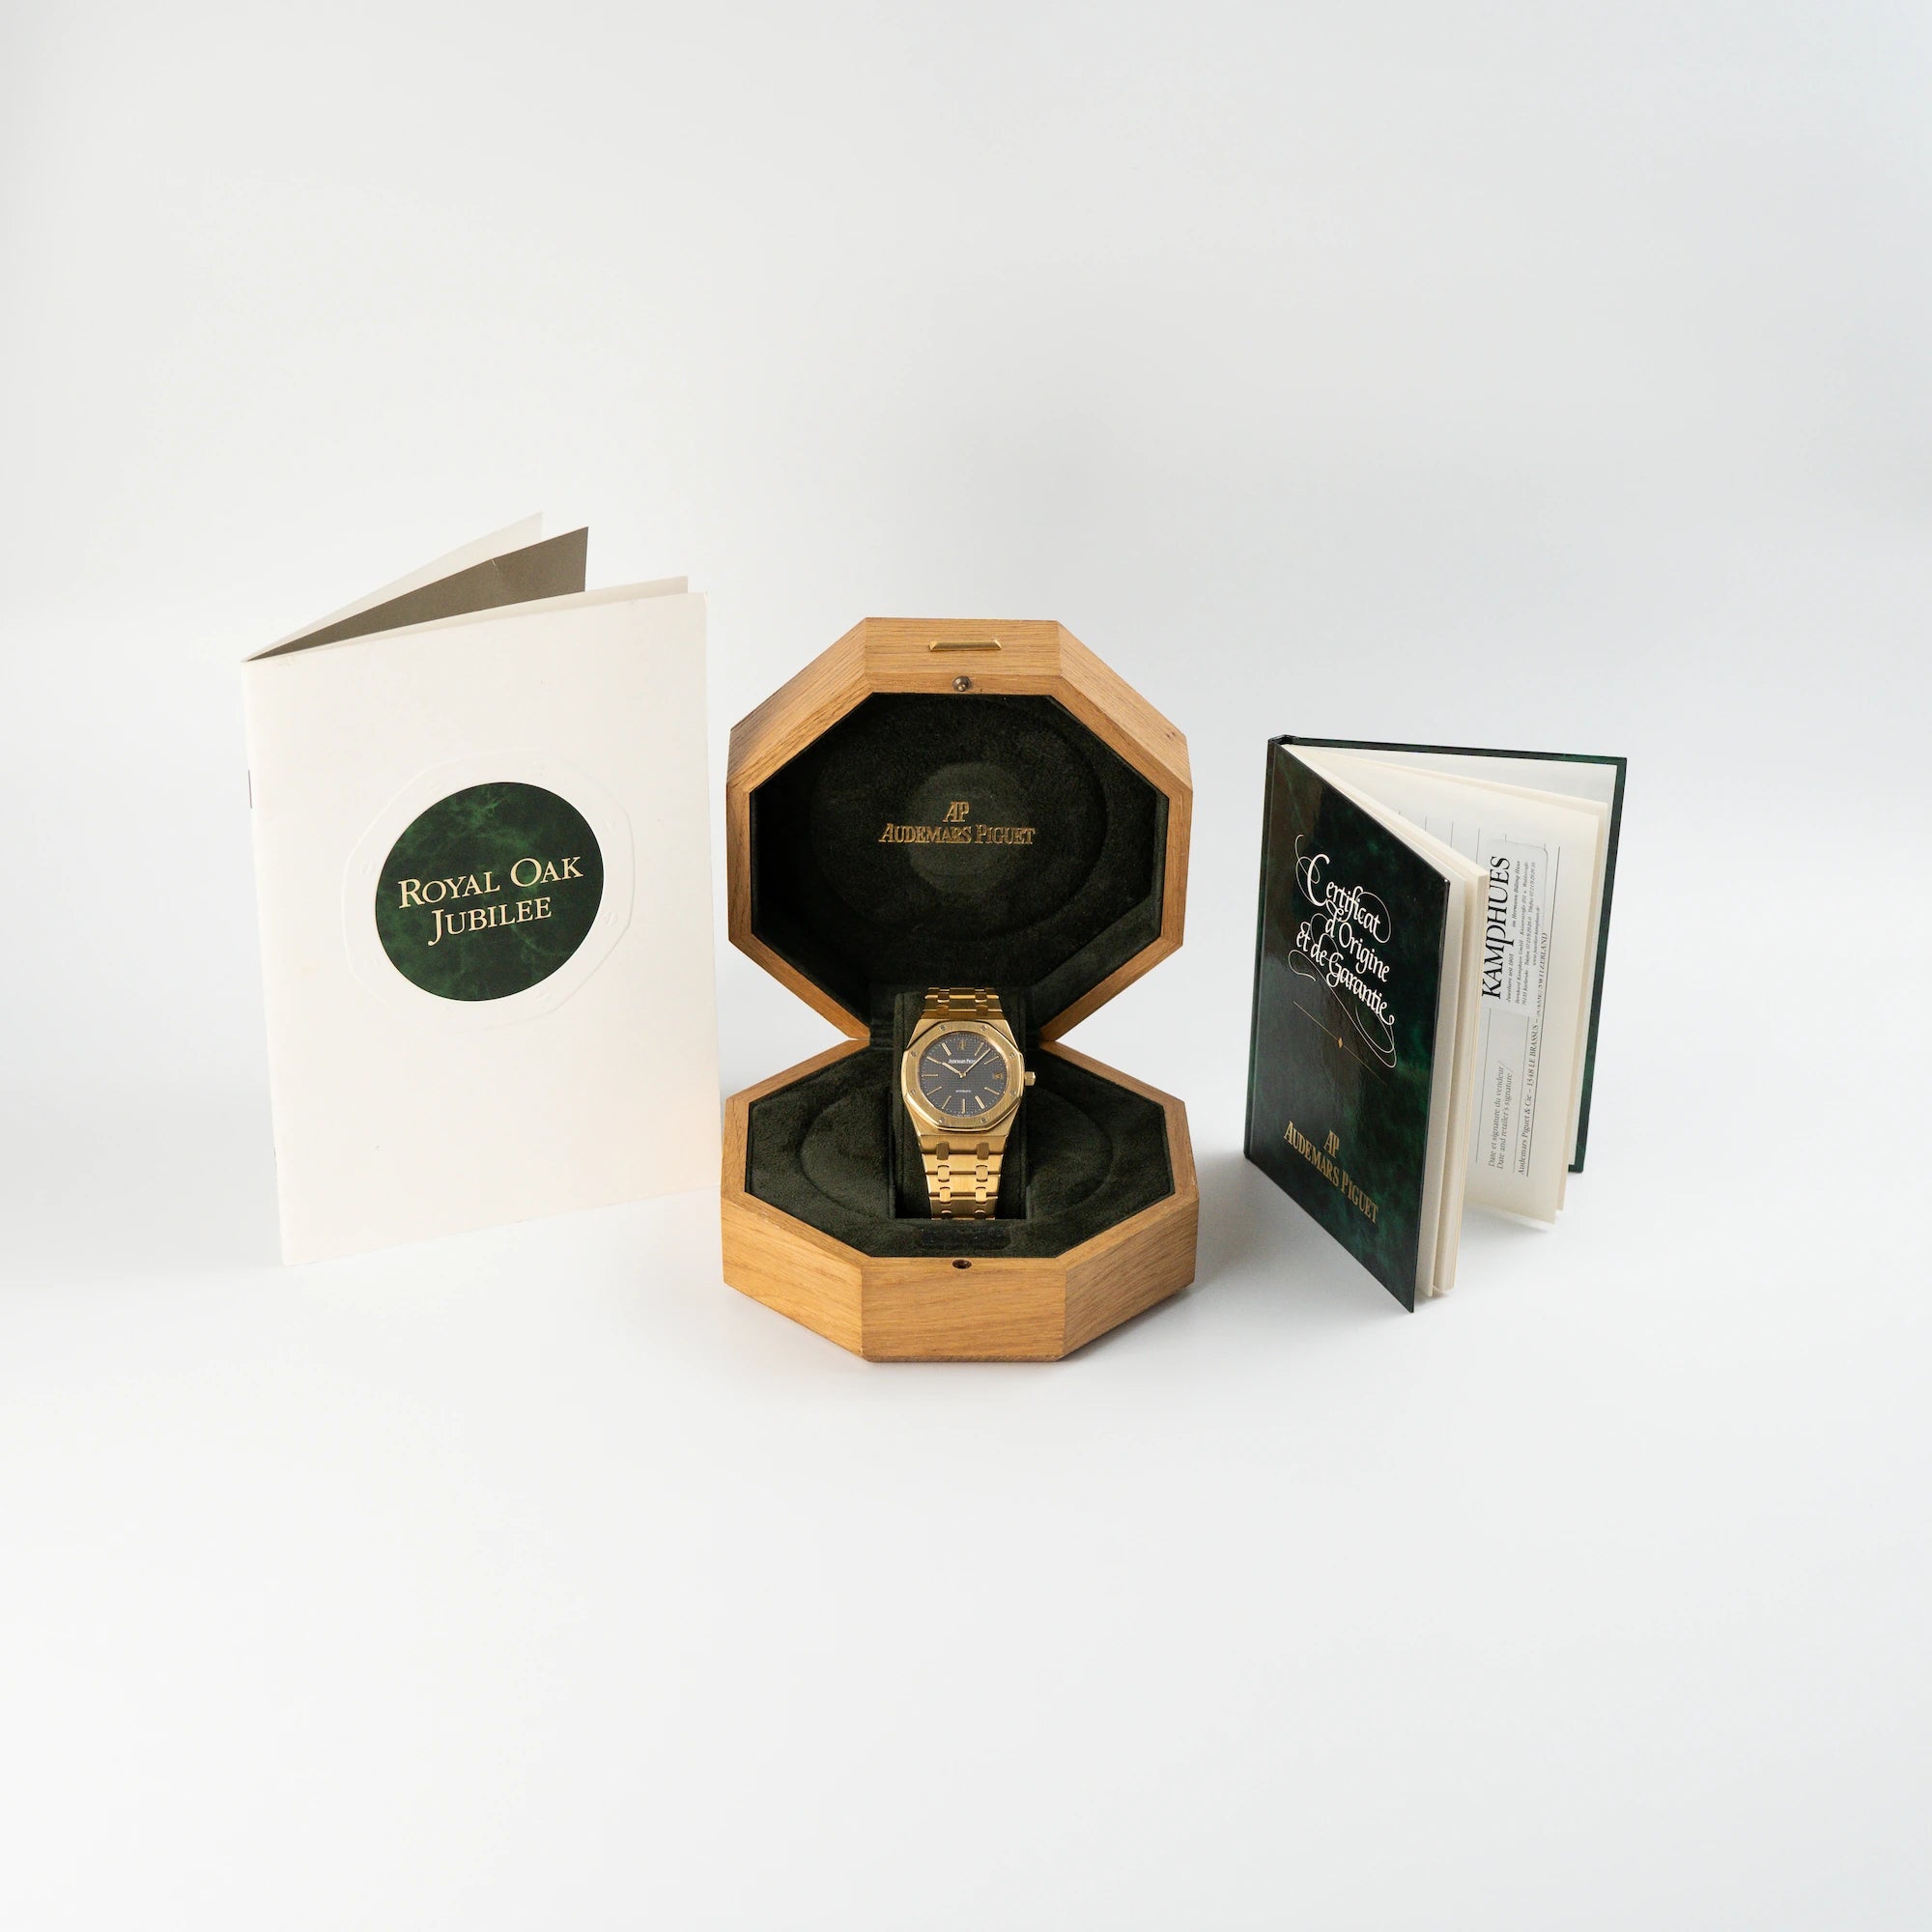 Audemars Piguet Royal Oak Jumbo 14802BA Jubilee in Gelbgold liegt in der Uhrenbox aus Holz und daneben stehen Booklet und Zertifikat der Uhr